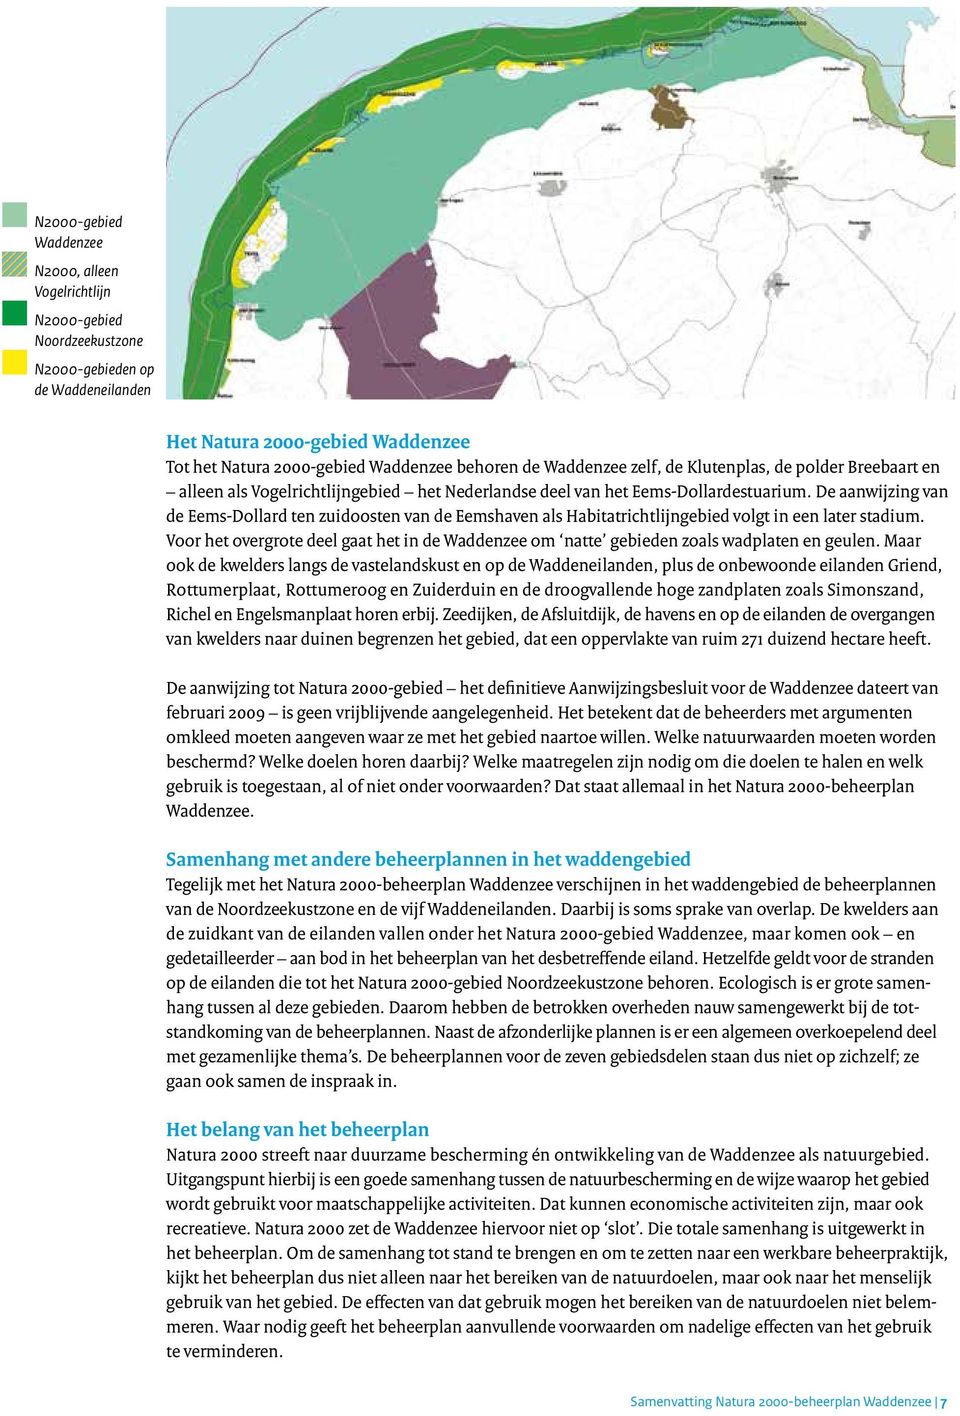 De aanwijzing van de Eems-Dollard ten zuidoosten van de Eemshaven als Habitatrichtlijngebied volgt in een later stadium.